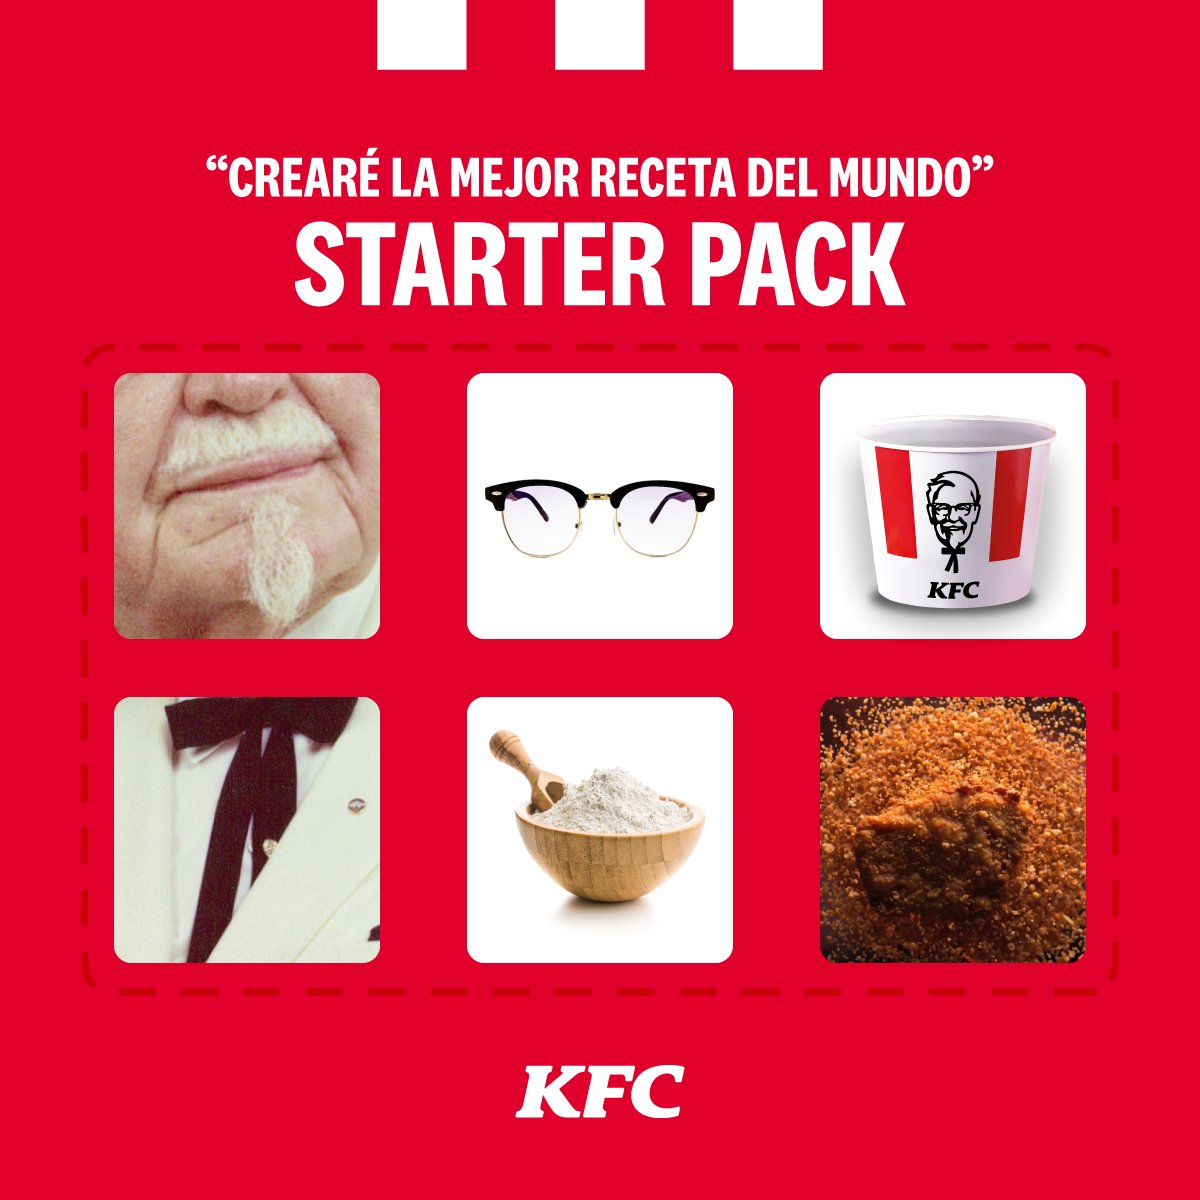 El Starker pack que solo pudo ser utilizado por una persona: EL legendario Coronel Sanders. #SiempreOriginal